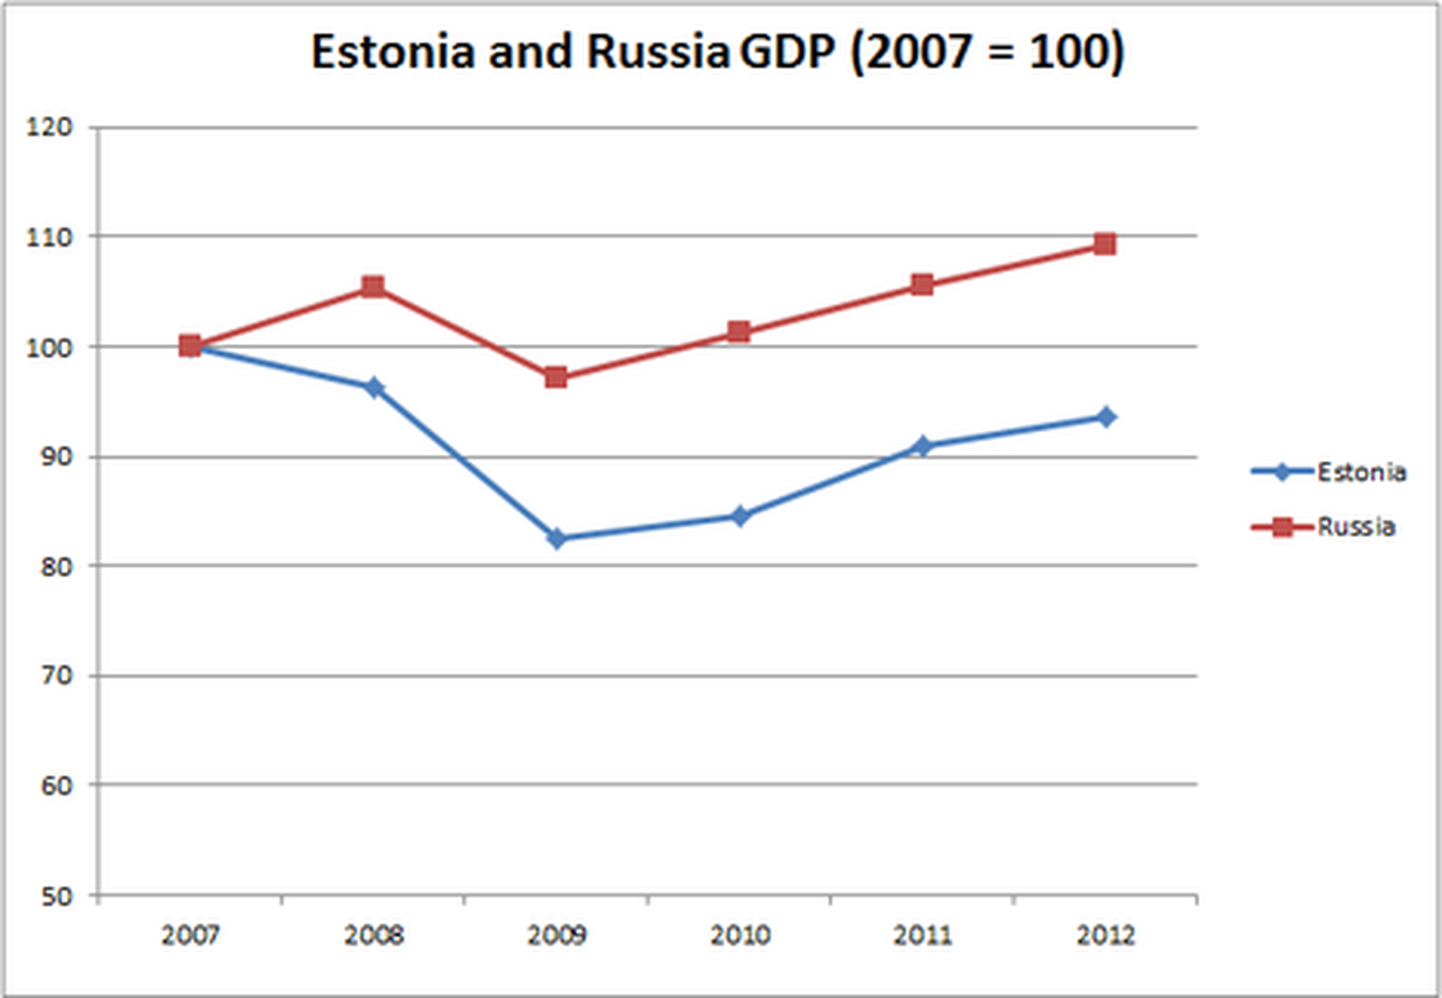 Марк Адоманис приводит сравнение роста экономики Эстонии и России с 2007 года. В прогнозах на этот год за основу взят 3-процентный рост в Эстонии и 3,5-процентный рост в России.